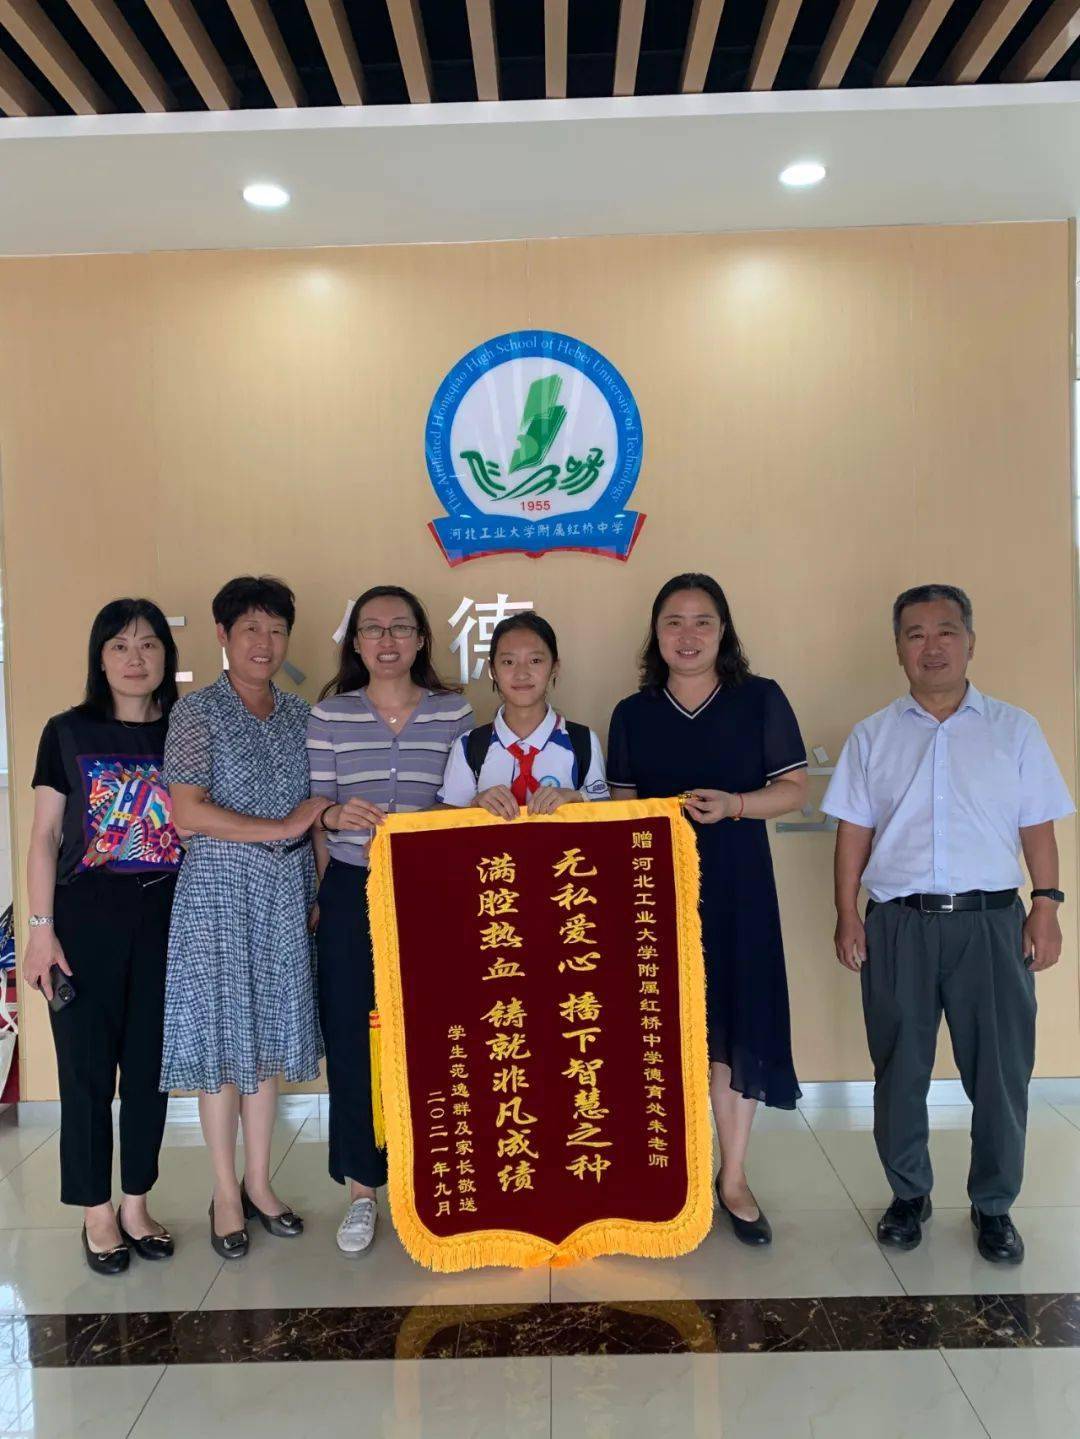 带着激动的心情来到学校为班主任王晓丹老师和数学朱晶老师送上锦旗